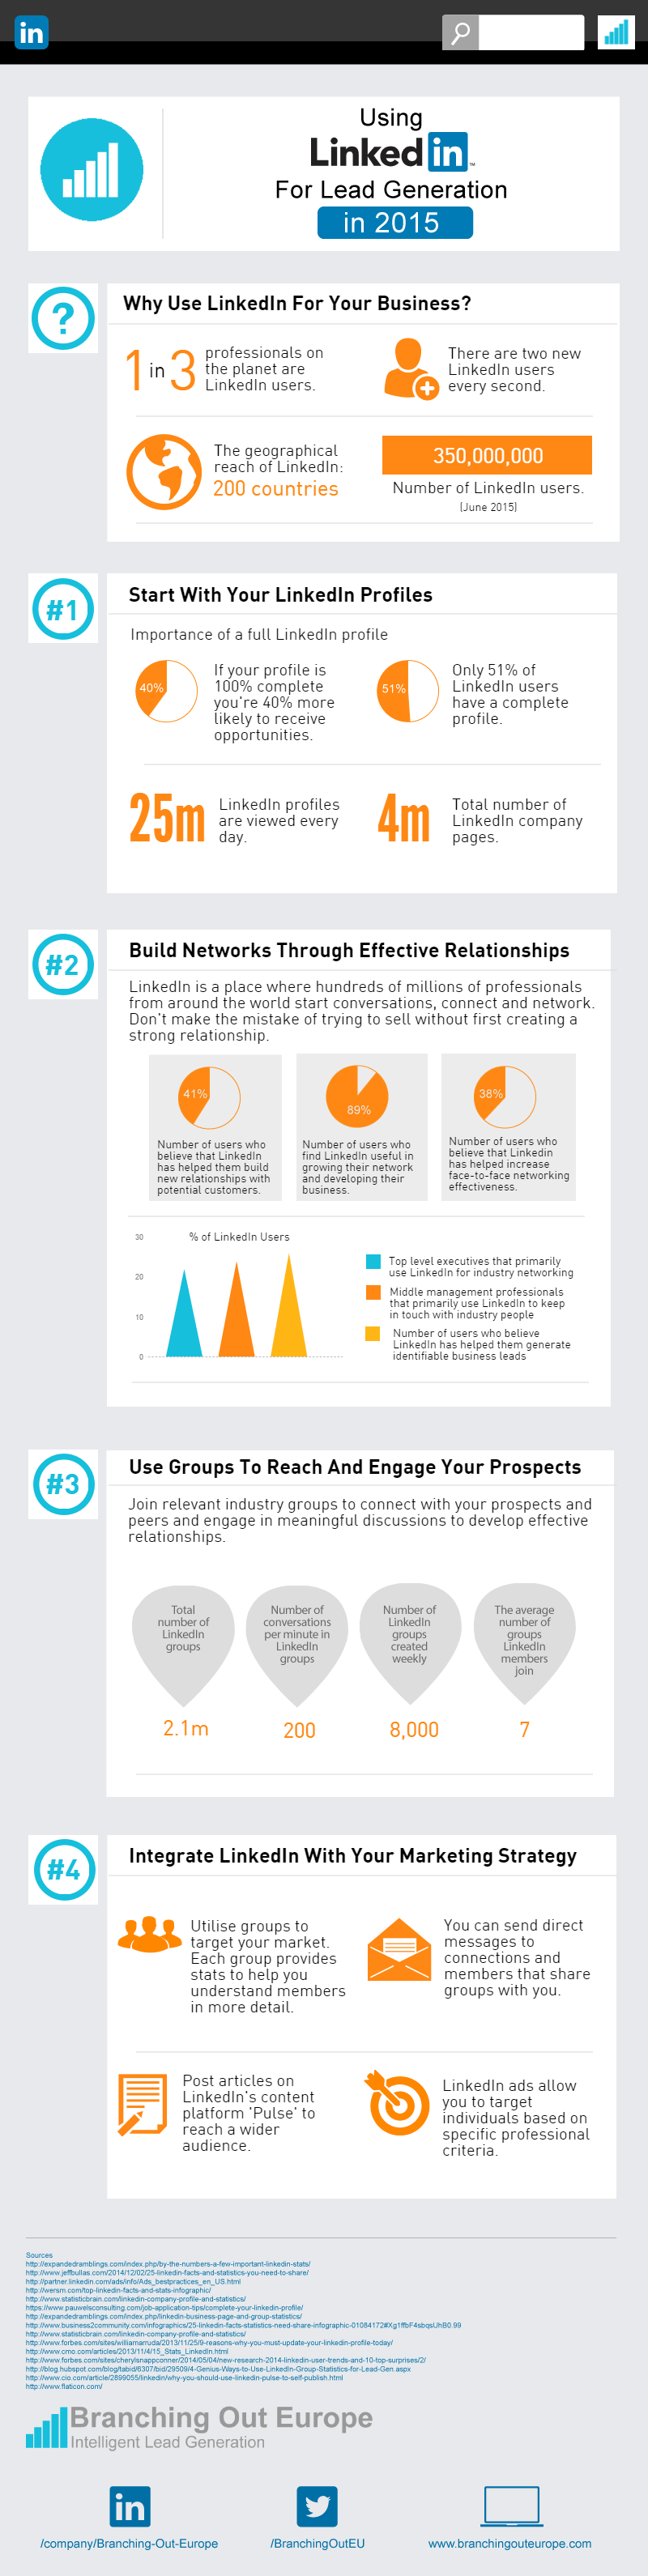 Tips om LinkedIn leads te genereren